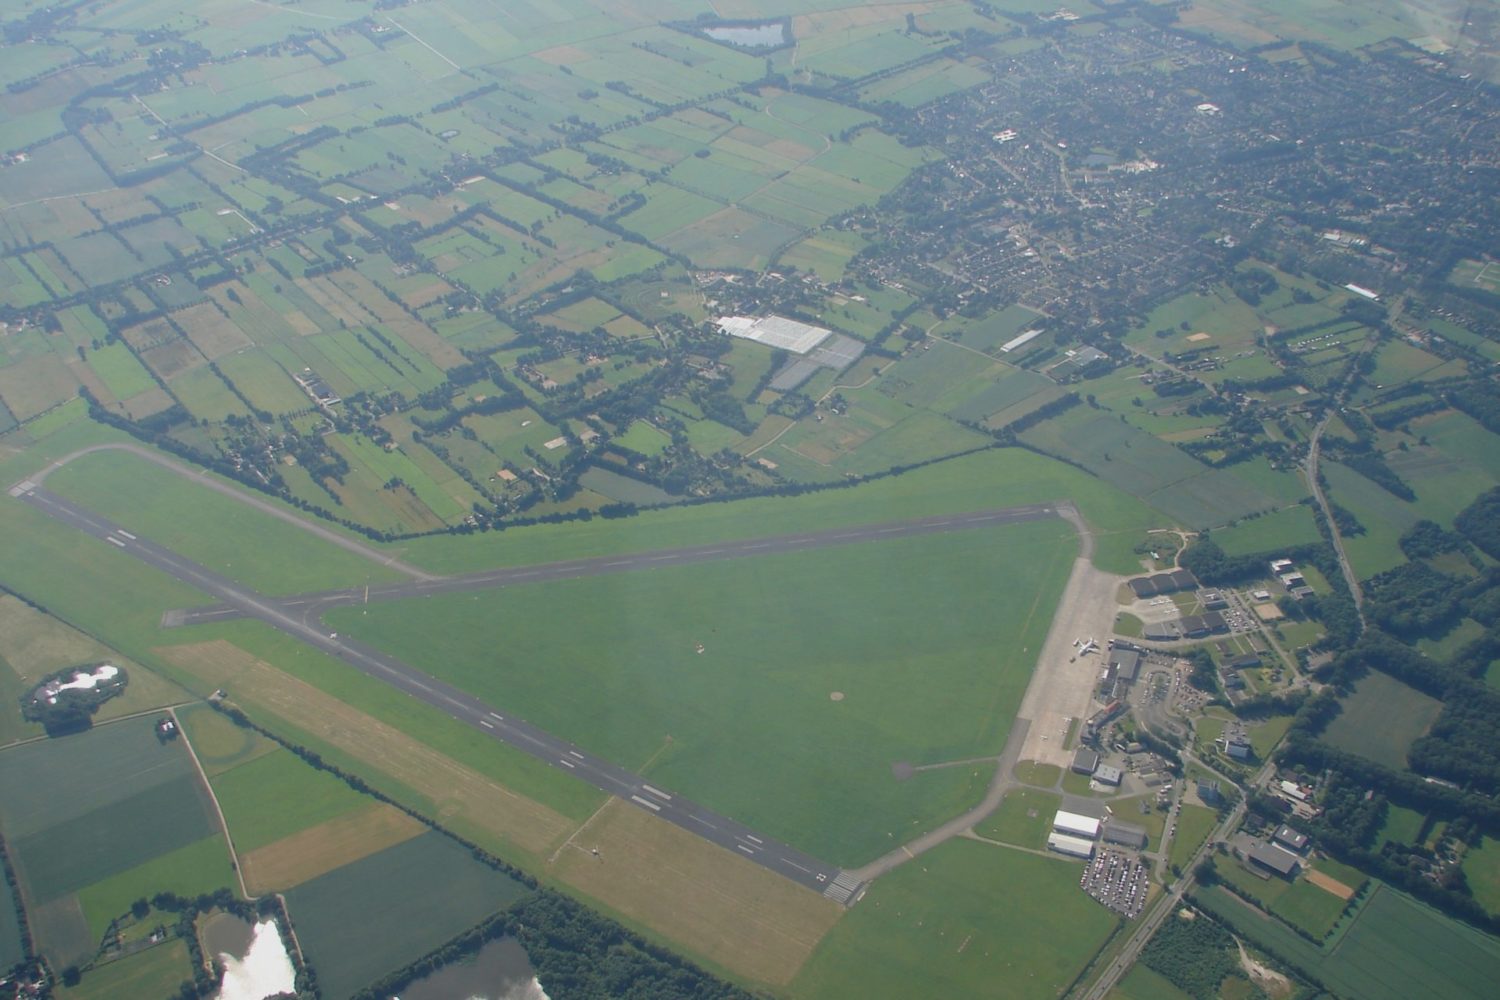 Groningen Airport Eelde Overview Source Wikipedia